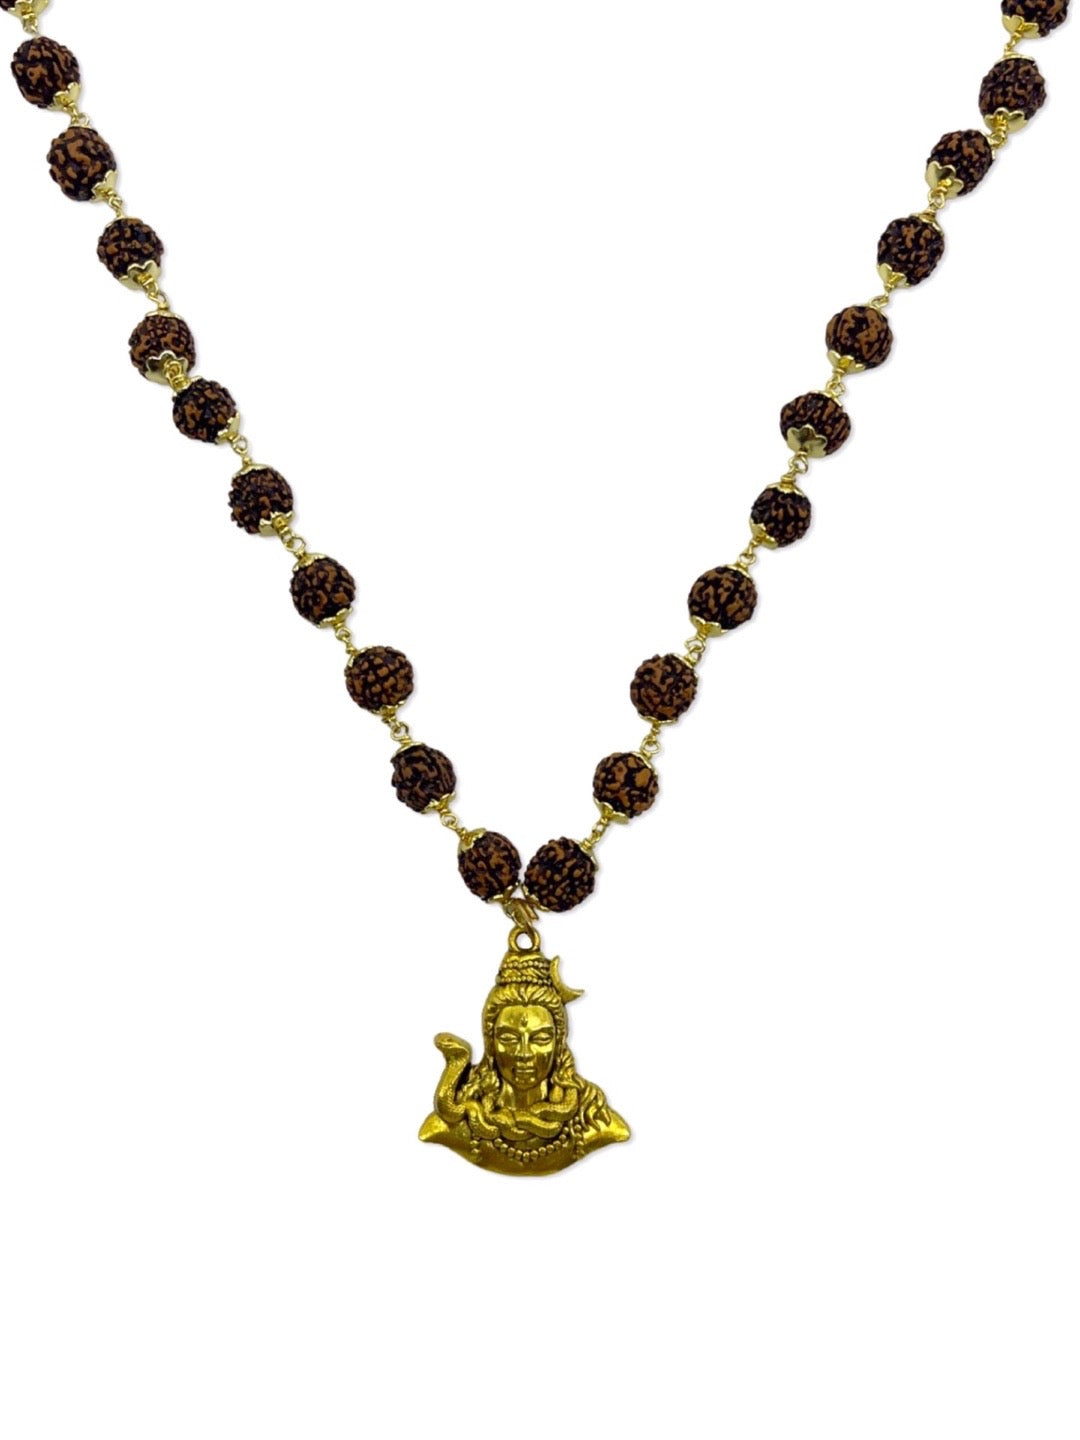 Lord Shiva Pendant Rudraksha Gold Mala